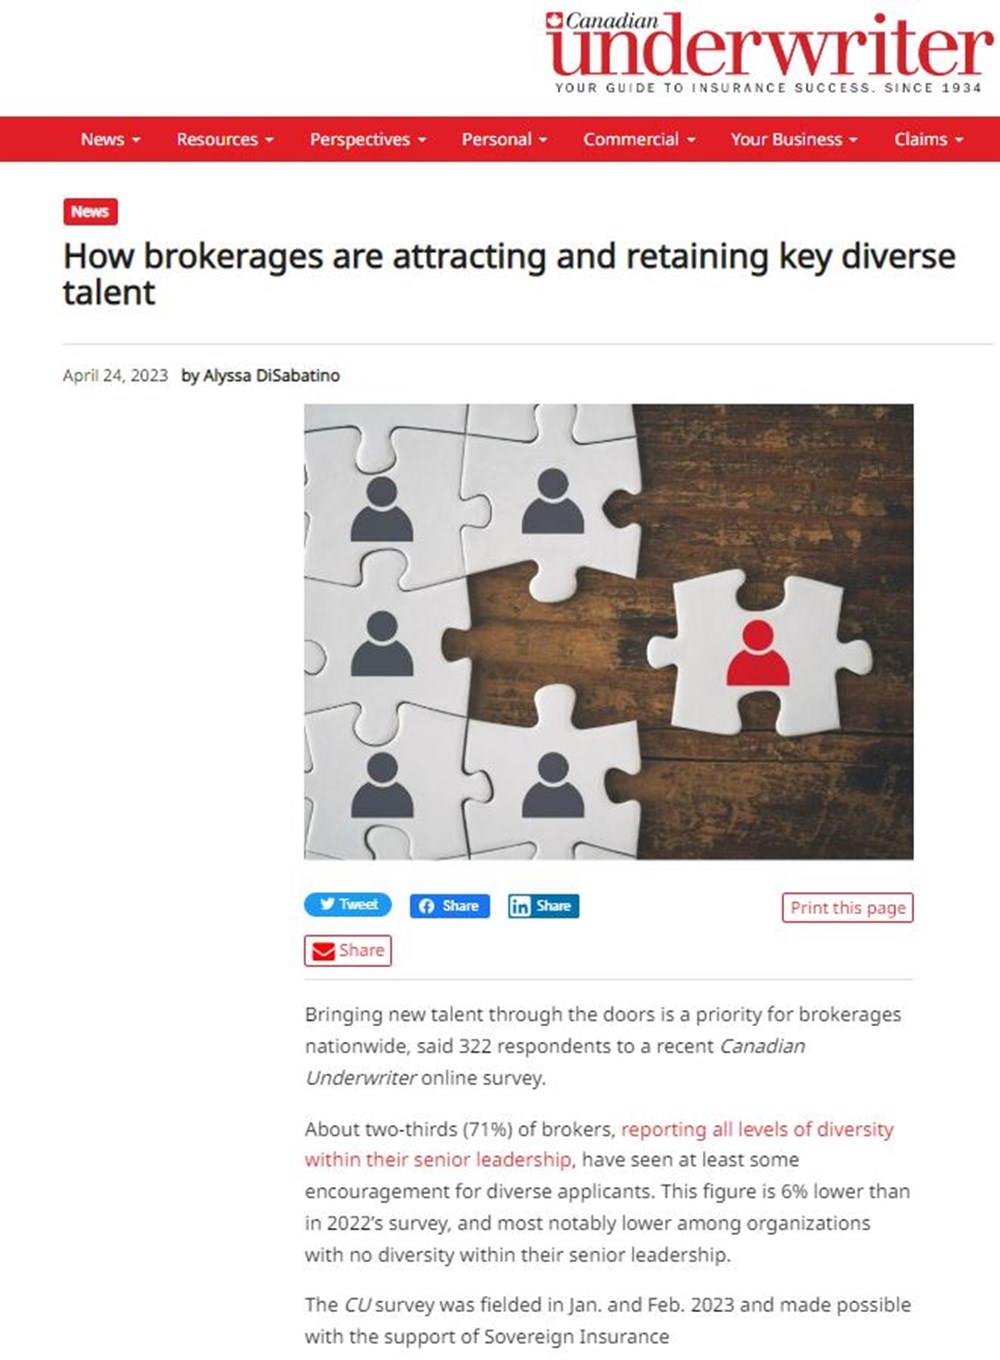 Une capture d'écran de l'article "How brokerages are attracting and retaining key diverse talent" en anglais